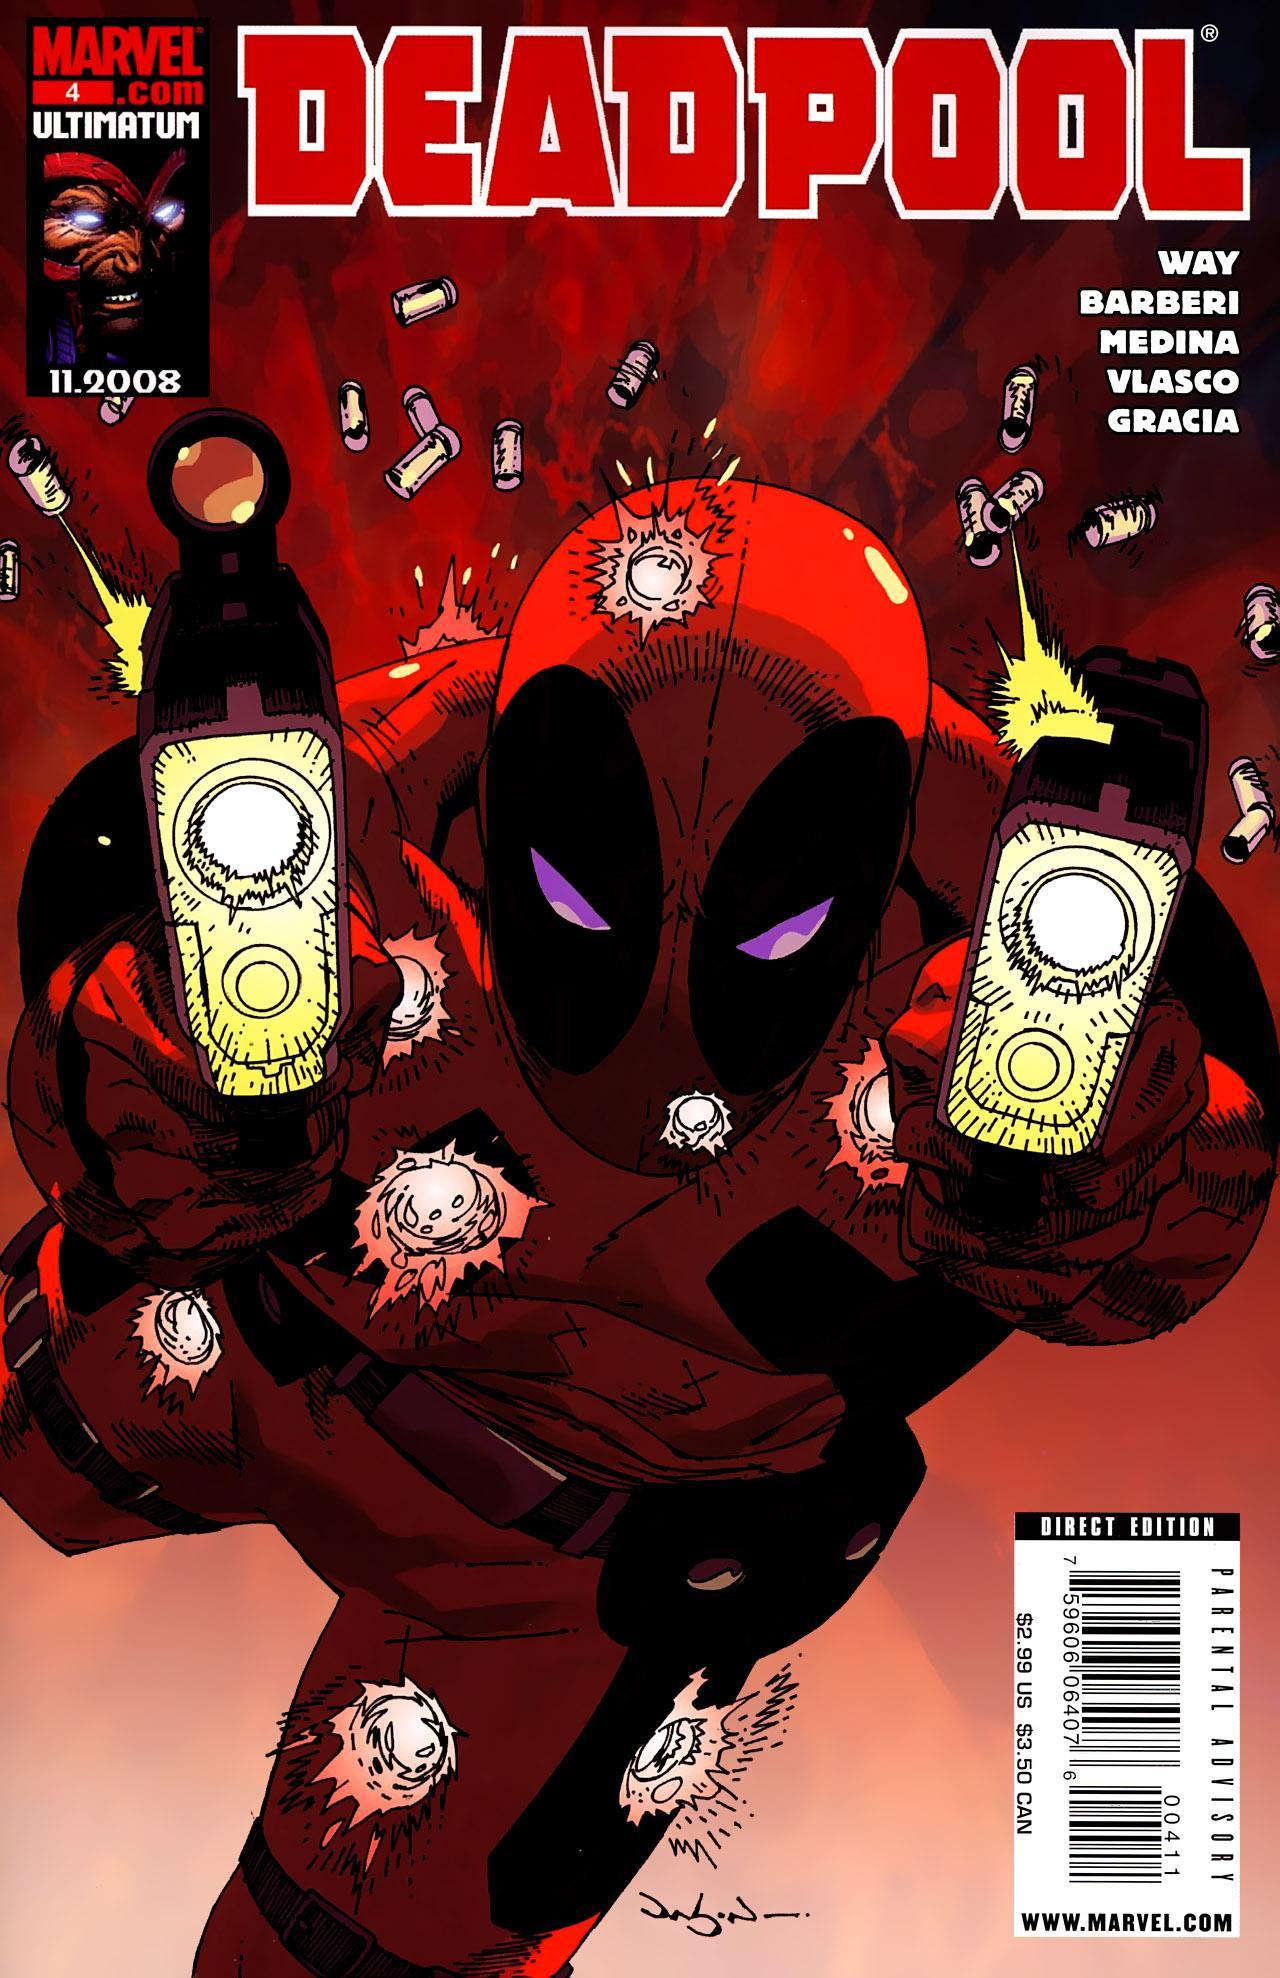 Deadpool Vol 4 4 | Marvel Database | Fandom